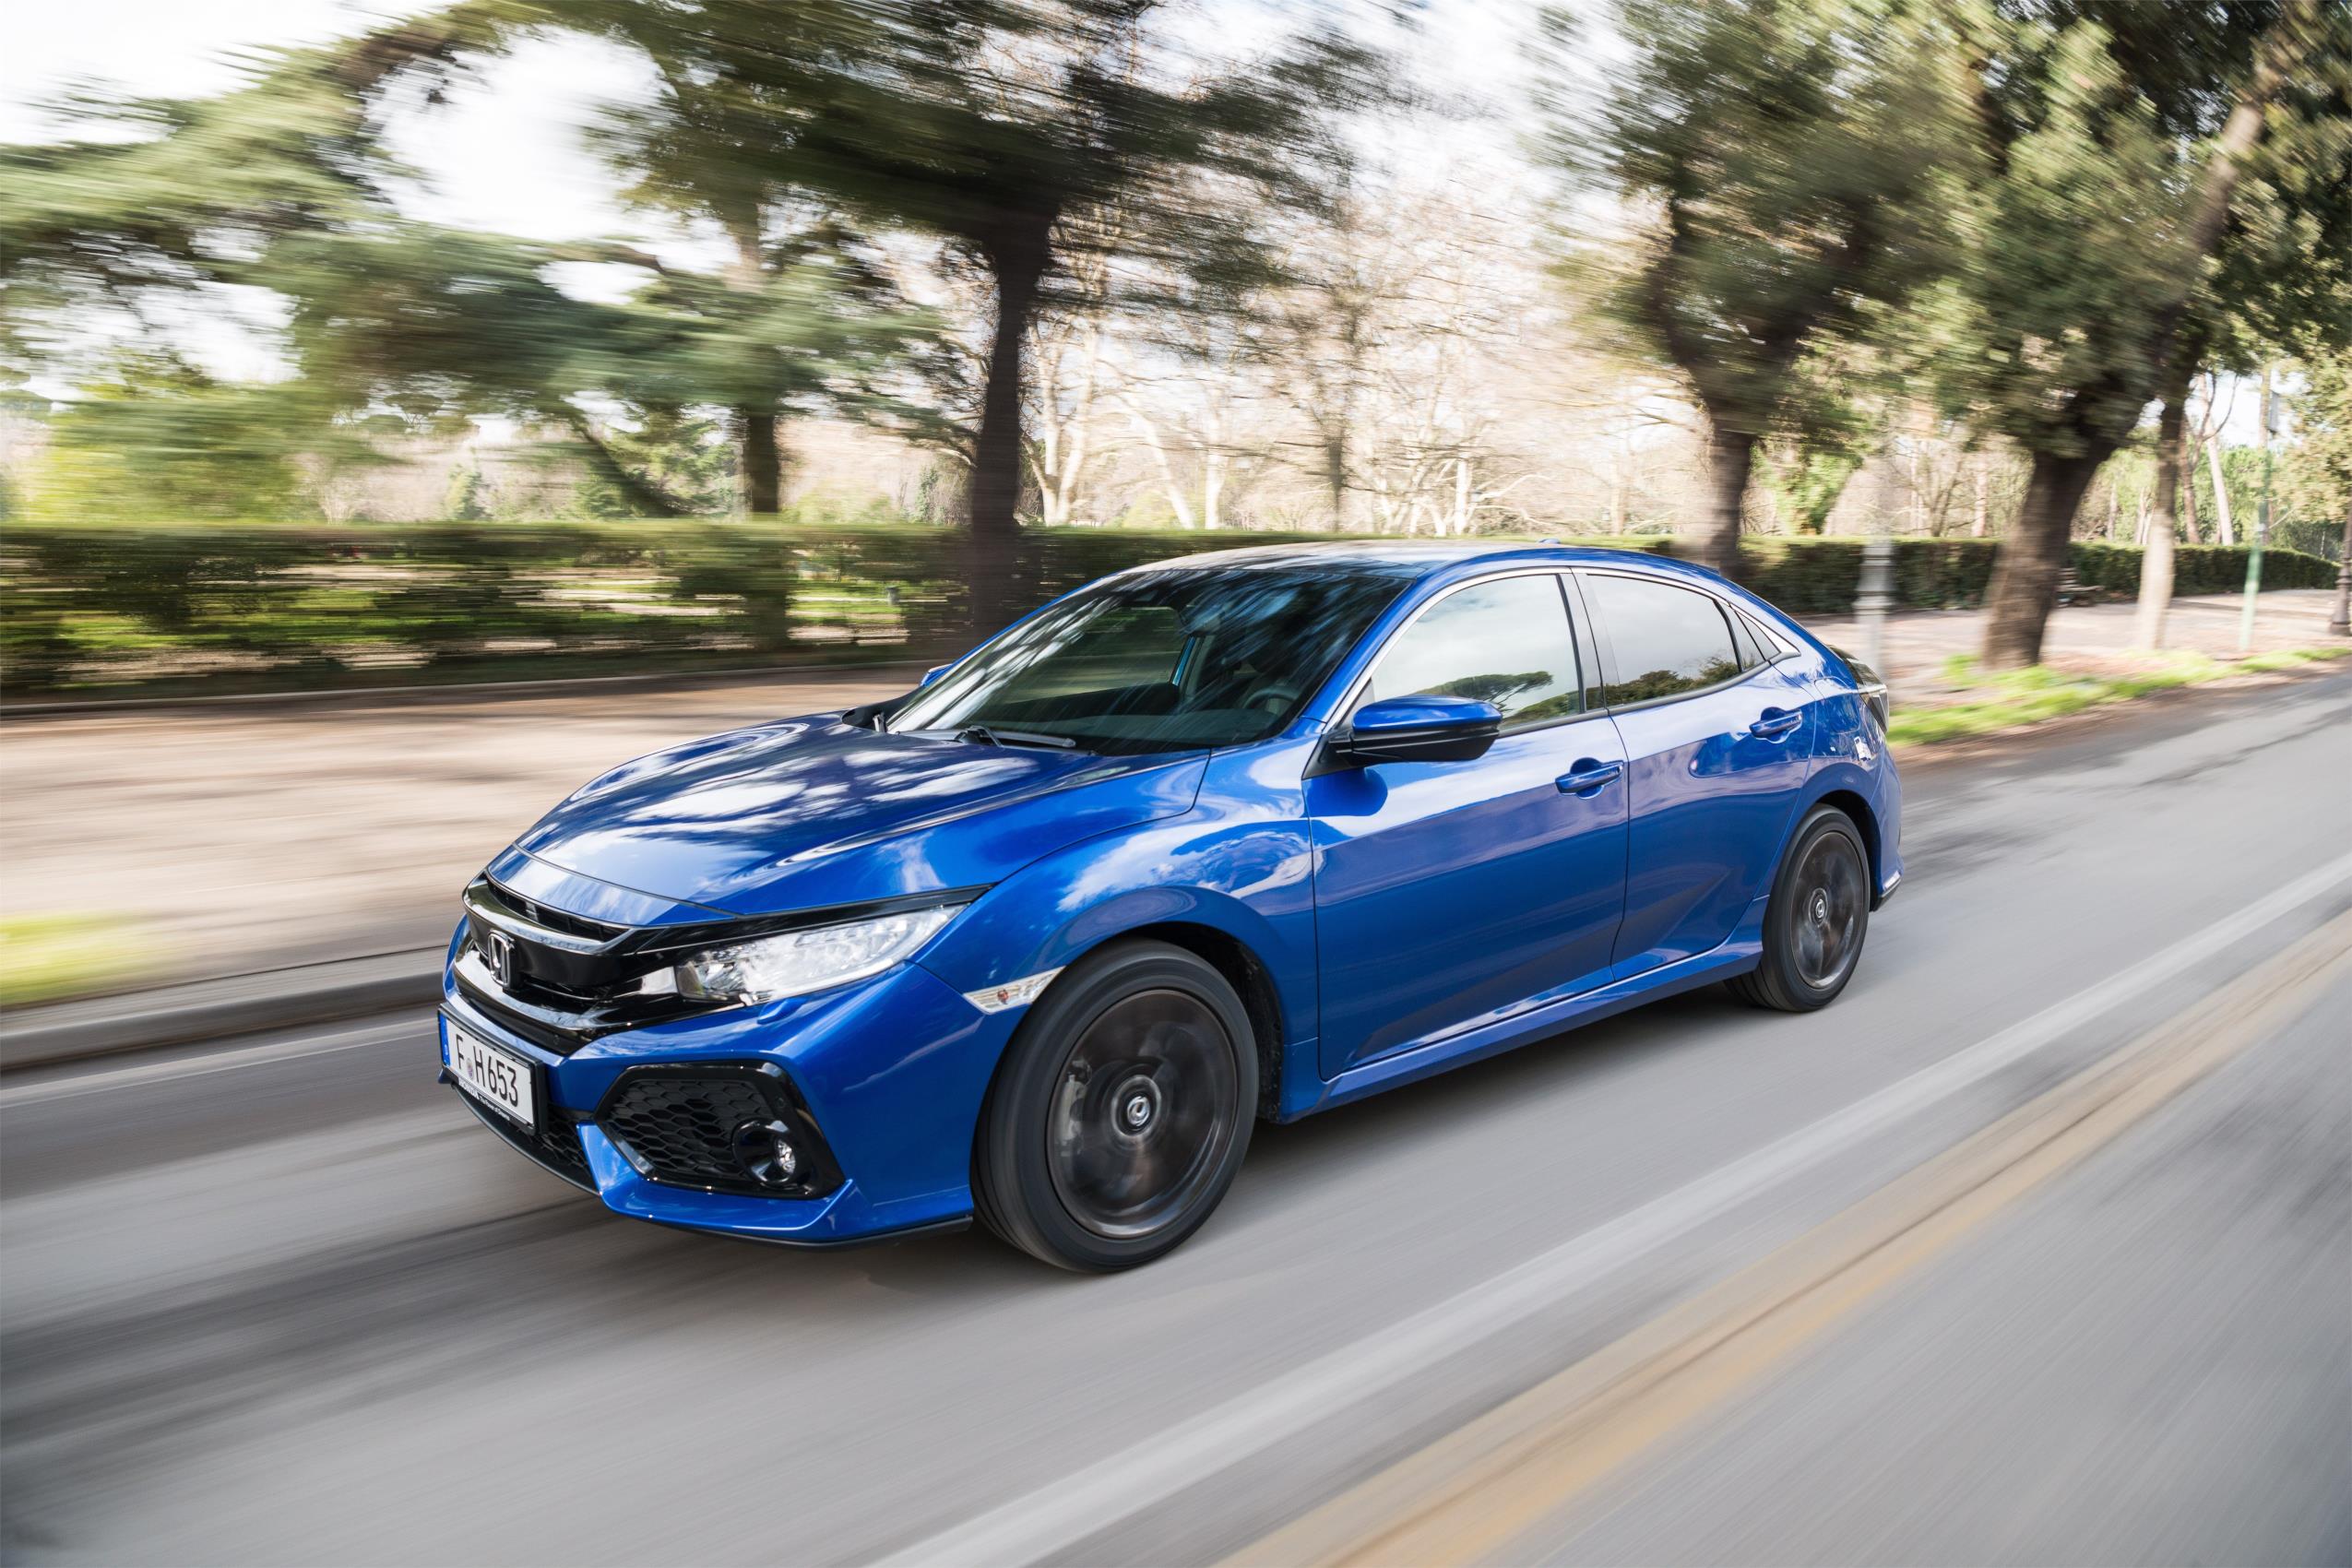 Honda acaba de confirmar los datos oficiales de consumo de combustible y emisiones de CO2 del Civic diésel 1.6 i-DTEC y del Jazz